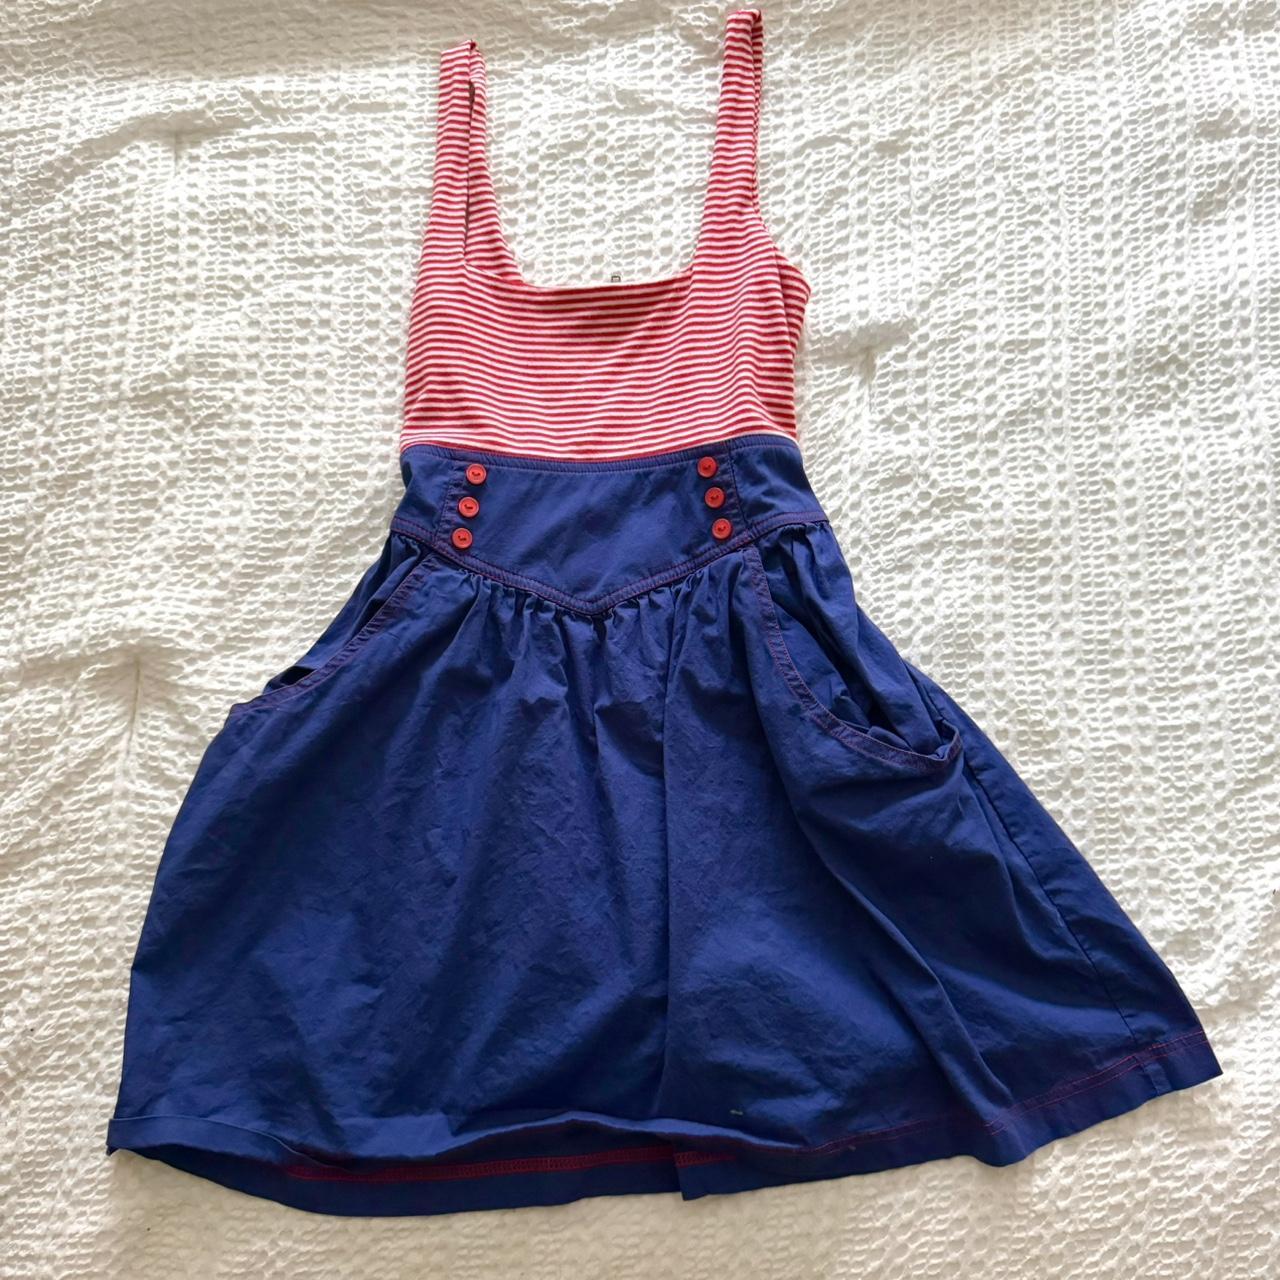 Vintage patriotic pinup baby doll dress 🇺🇸 Fits so... - Depop